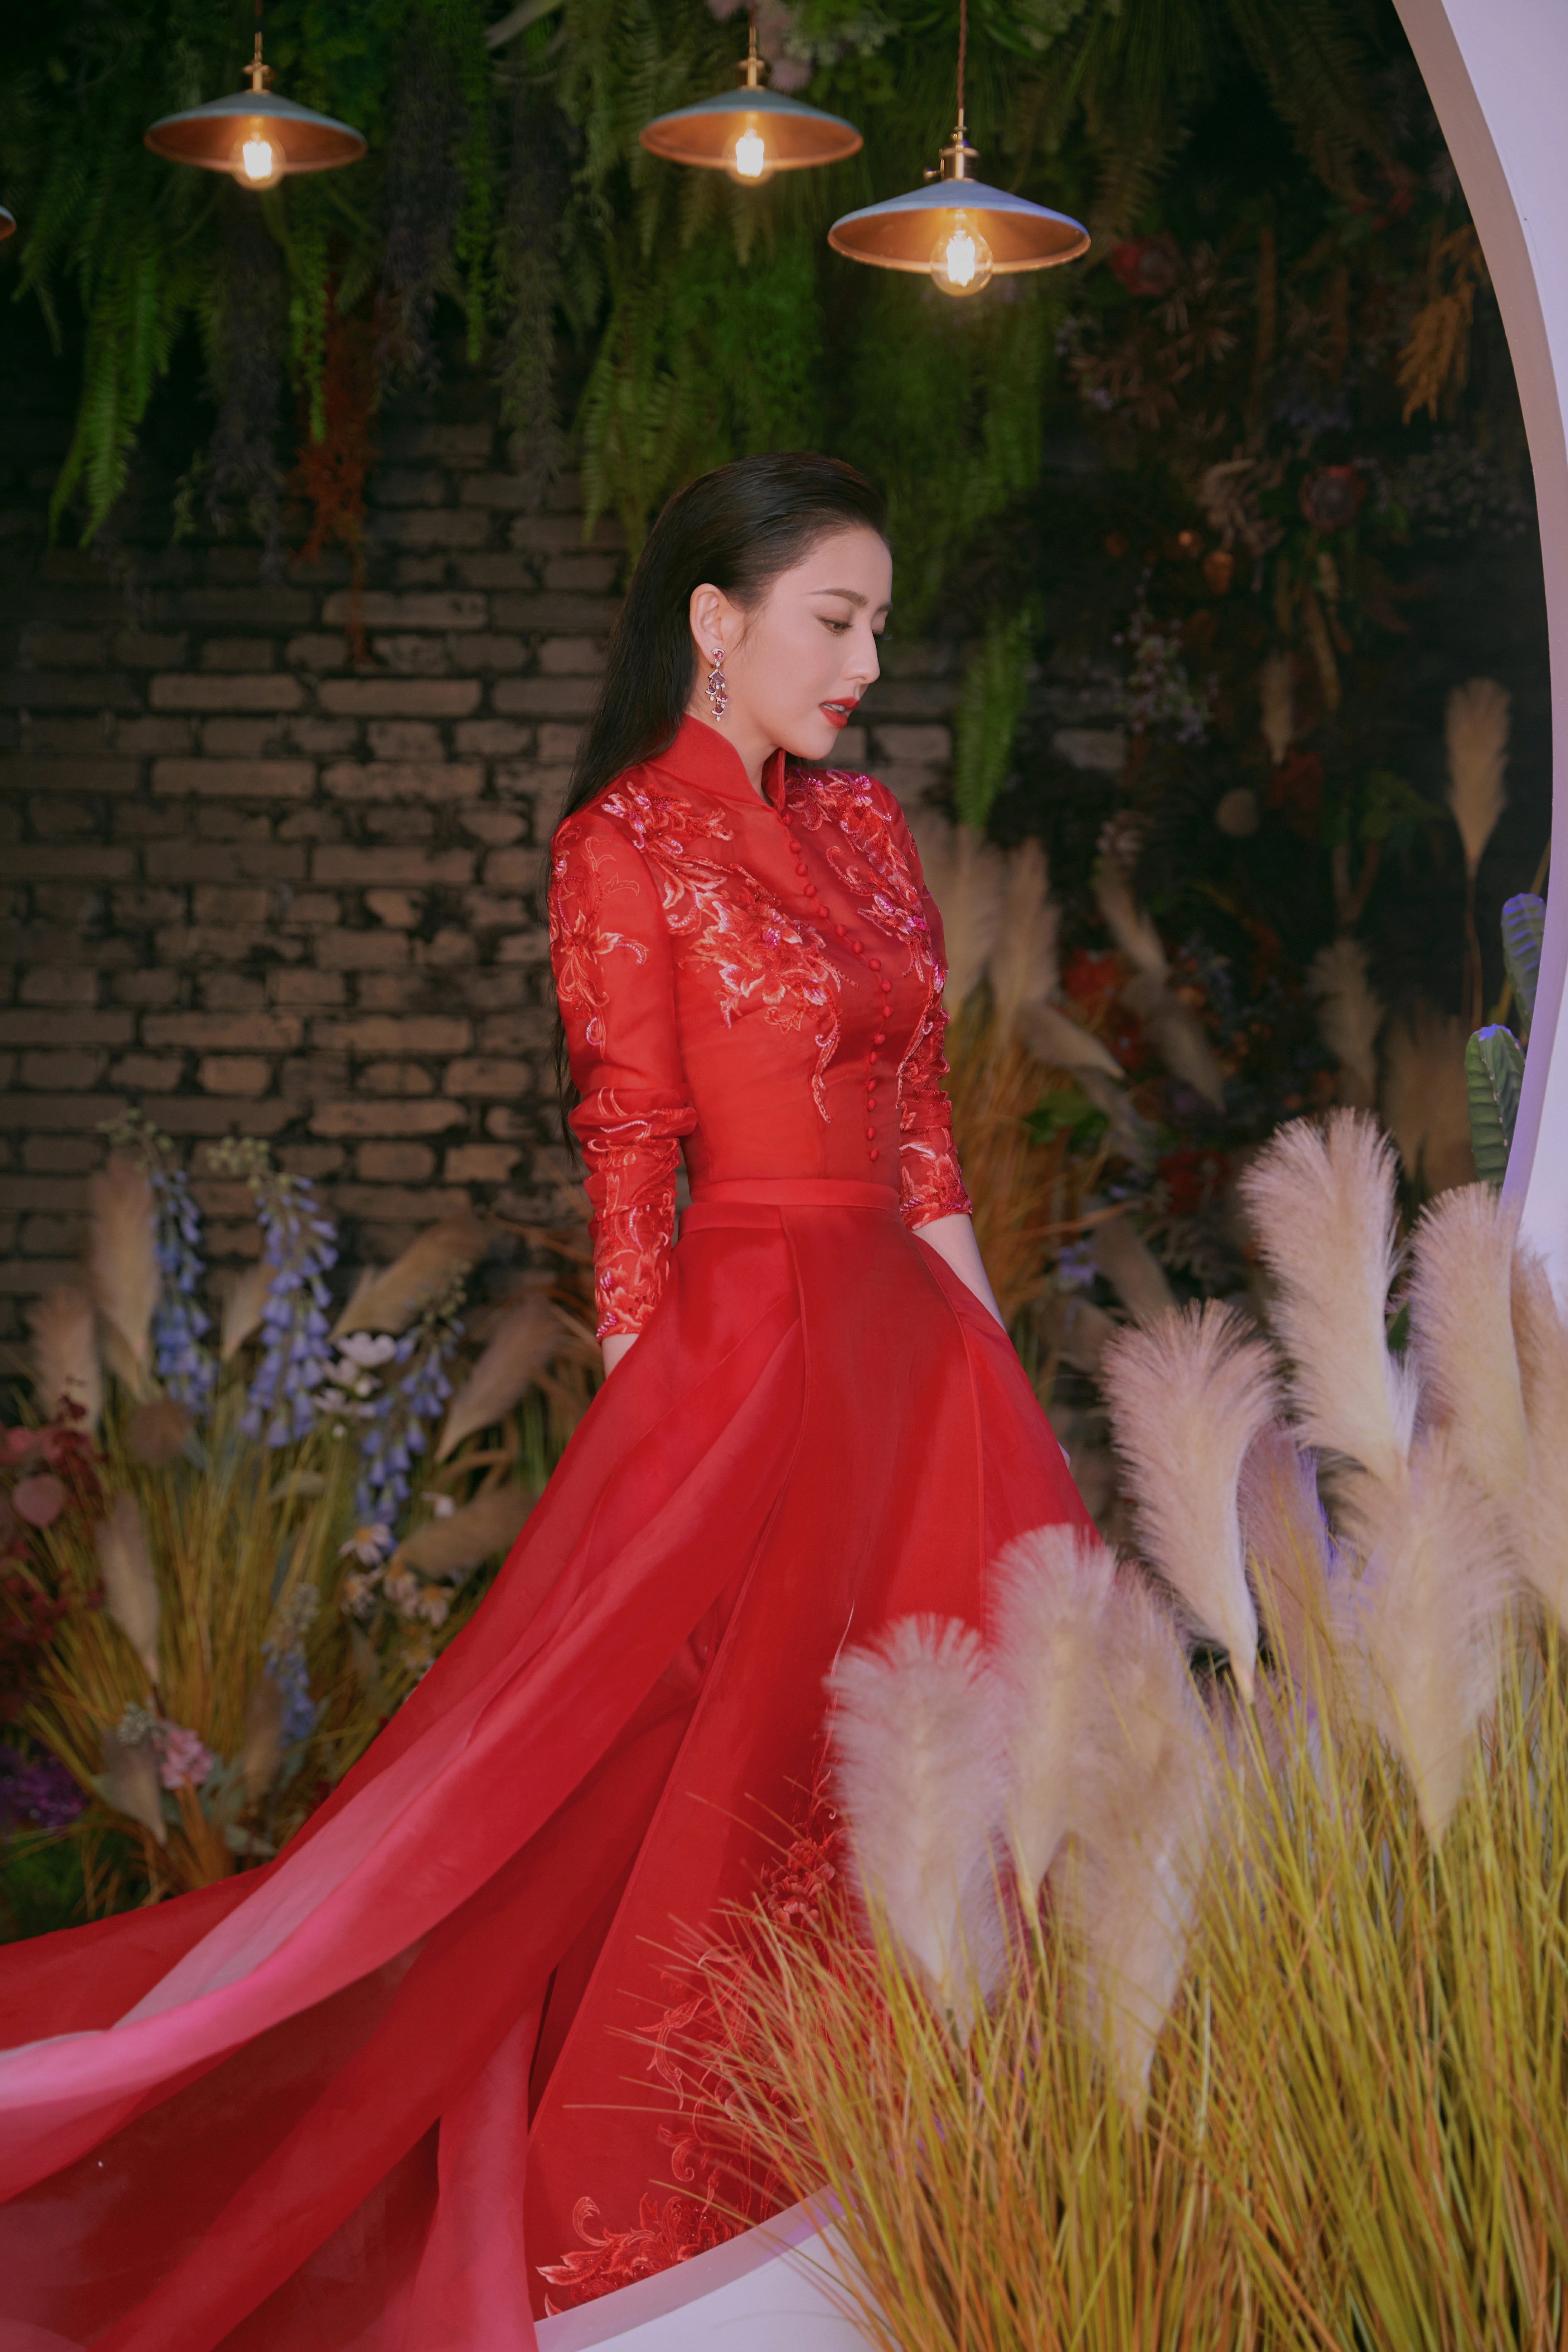 佟丽娅元宵节红裙写真曝光 美艳华丽的她站那就像一幅画,